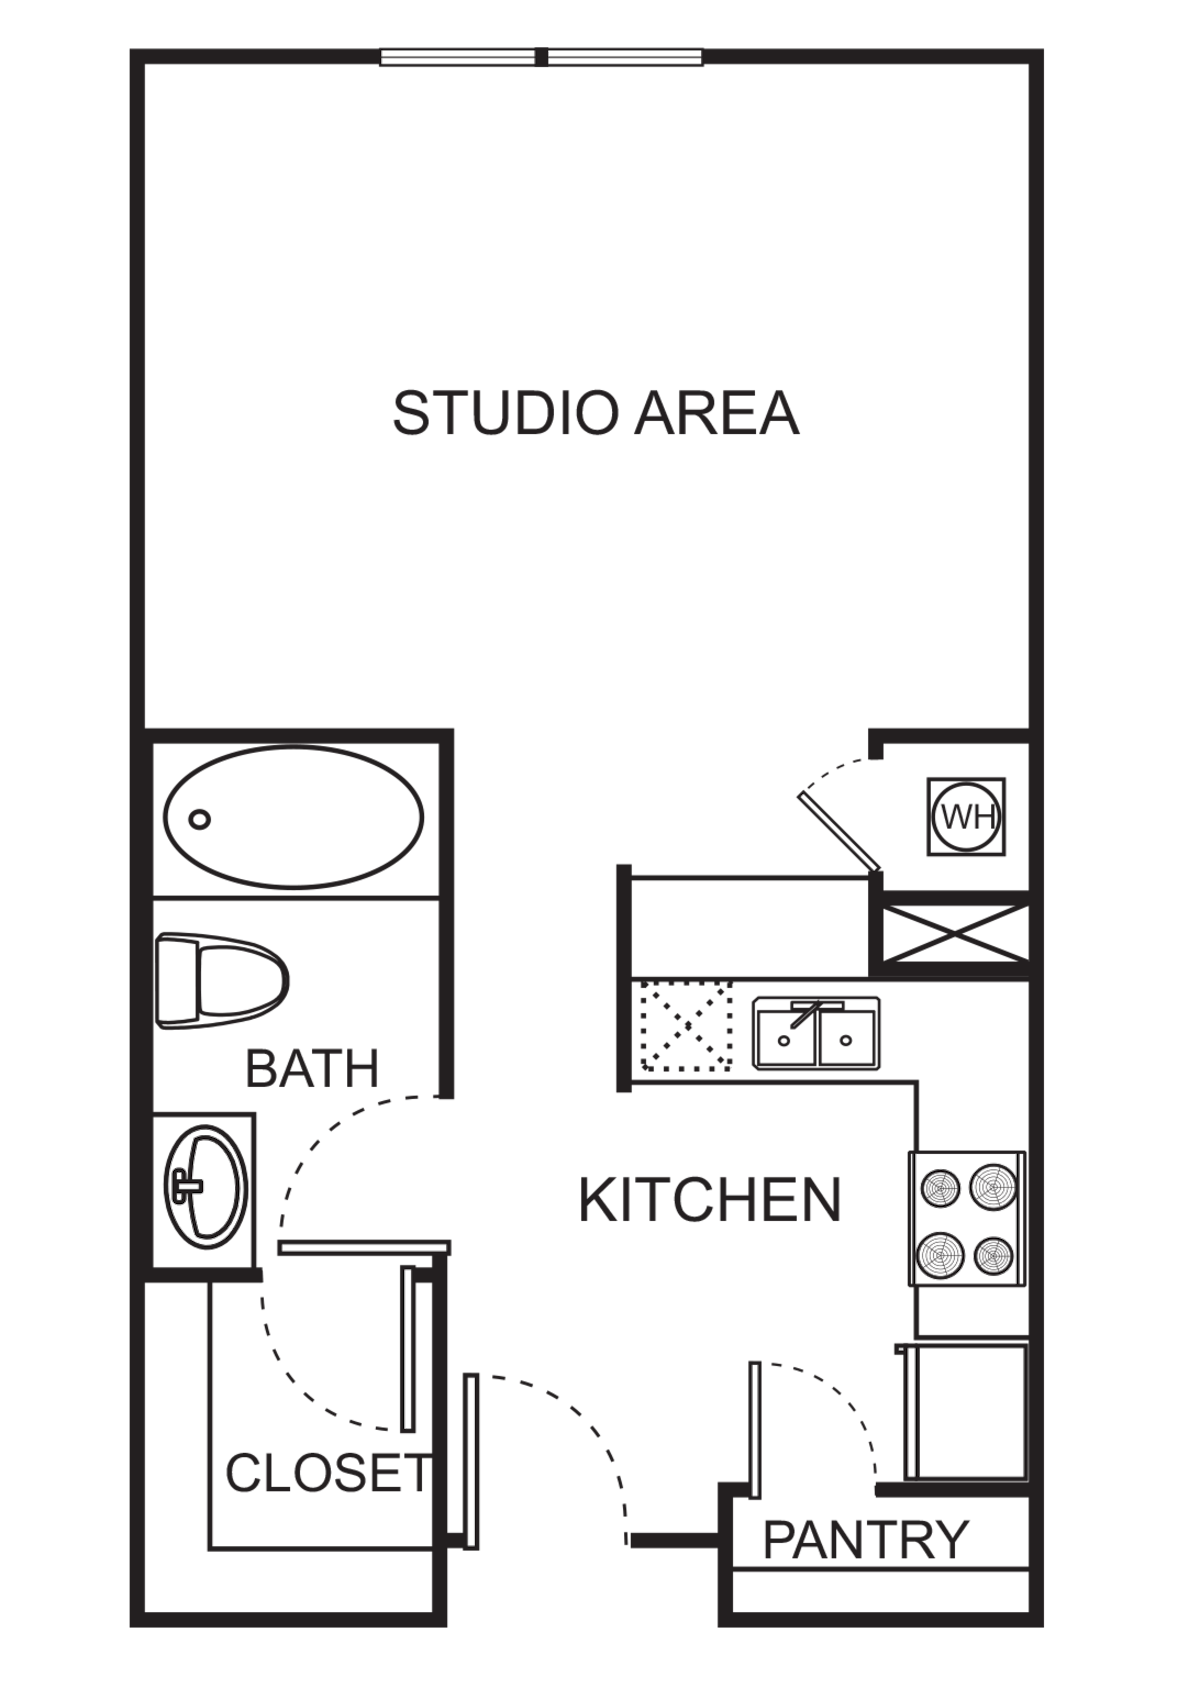 Floorplan diagram for S Studio, showing Studio